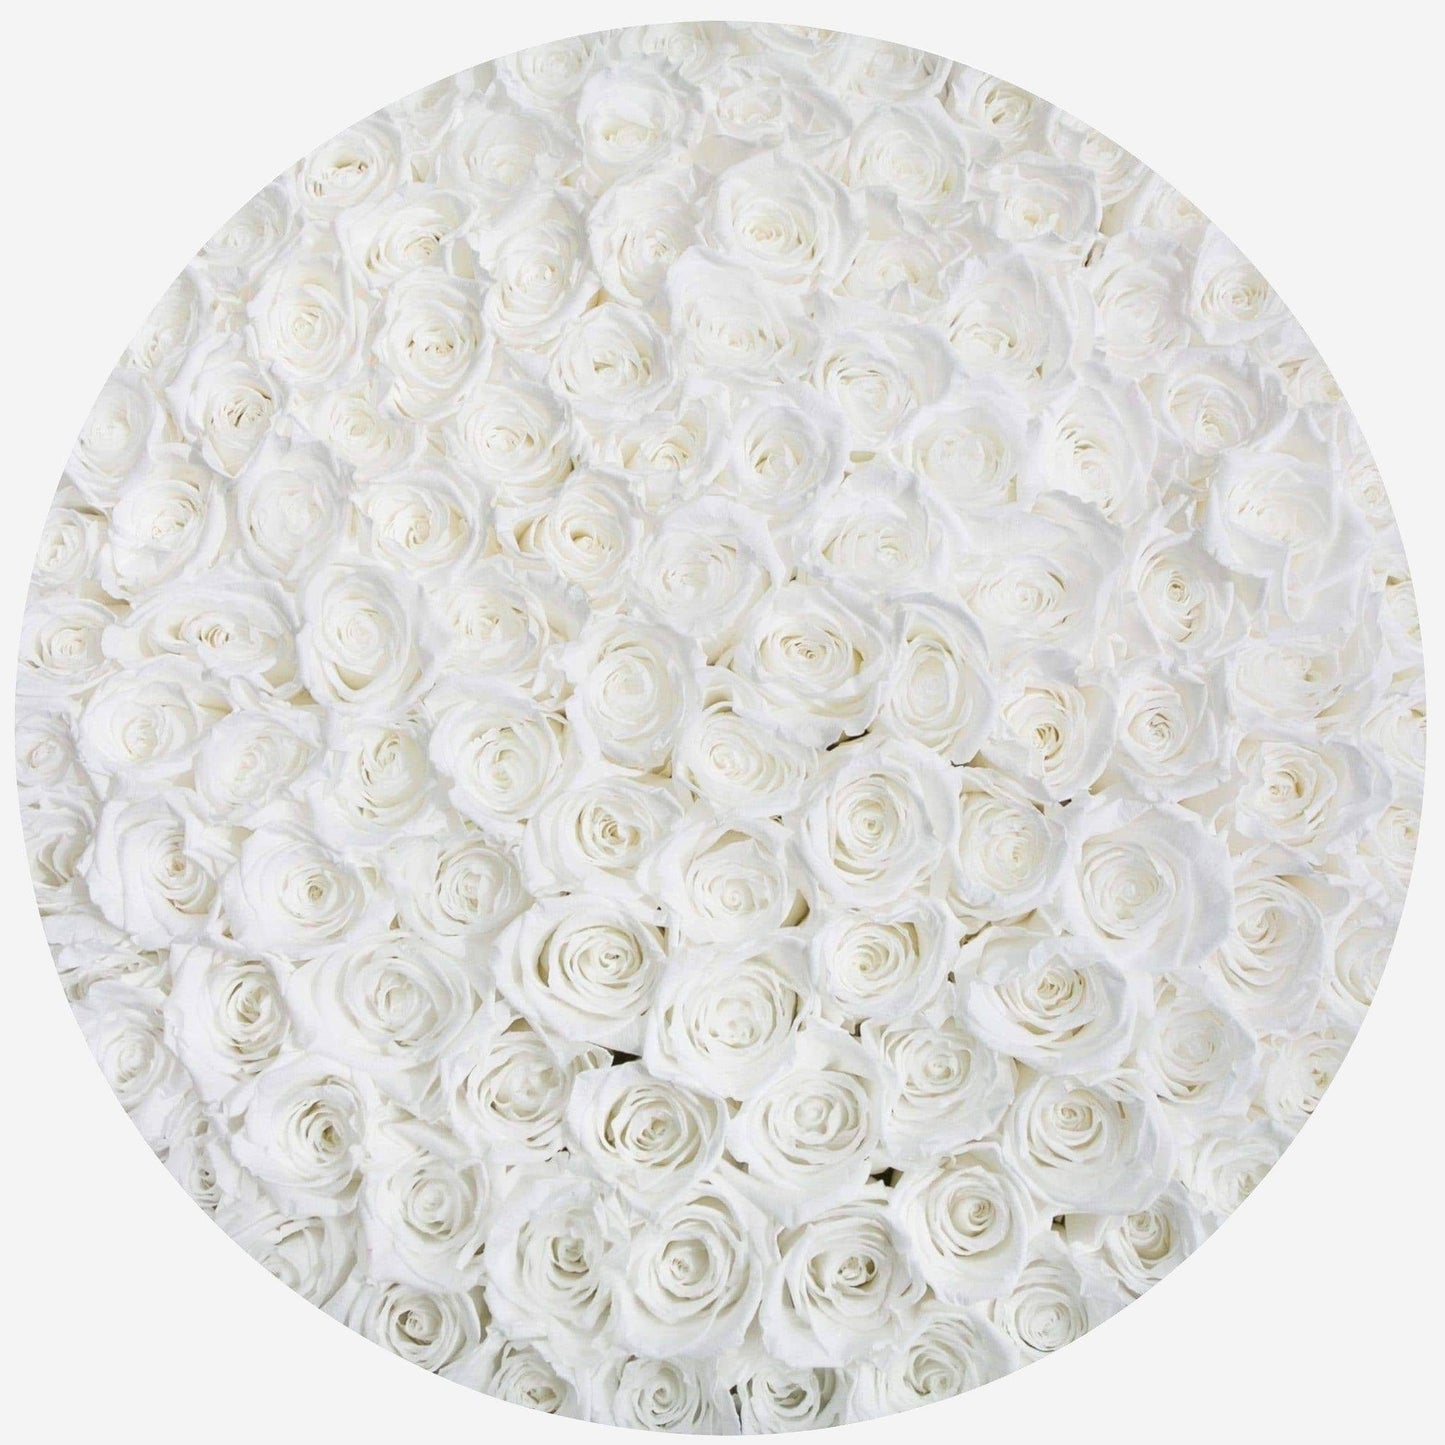 Deluxe Black Box | White Roses - The Million Roses